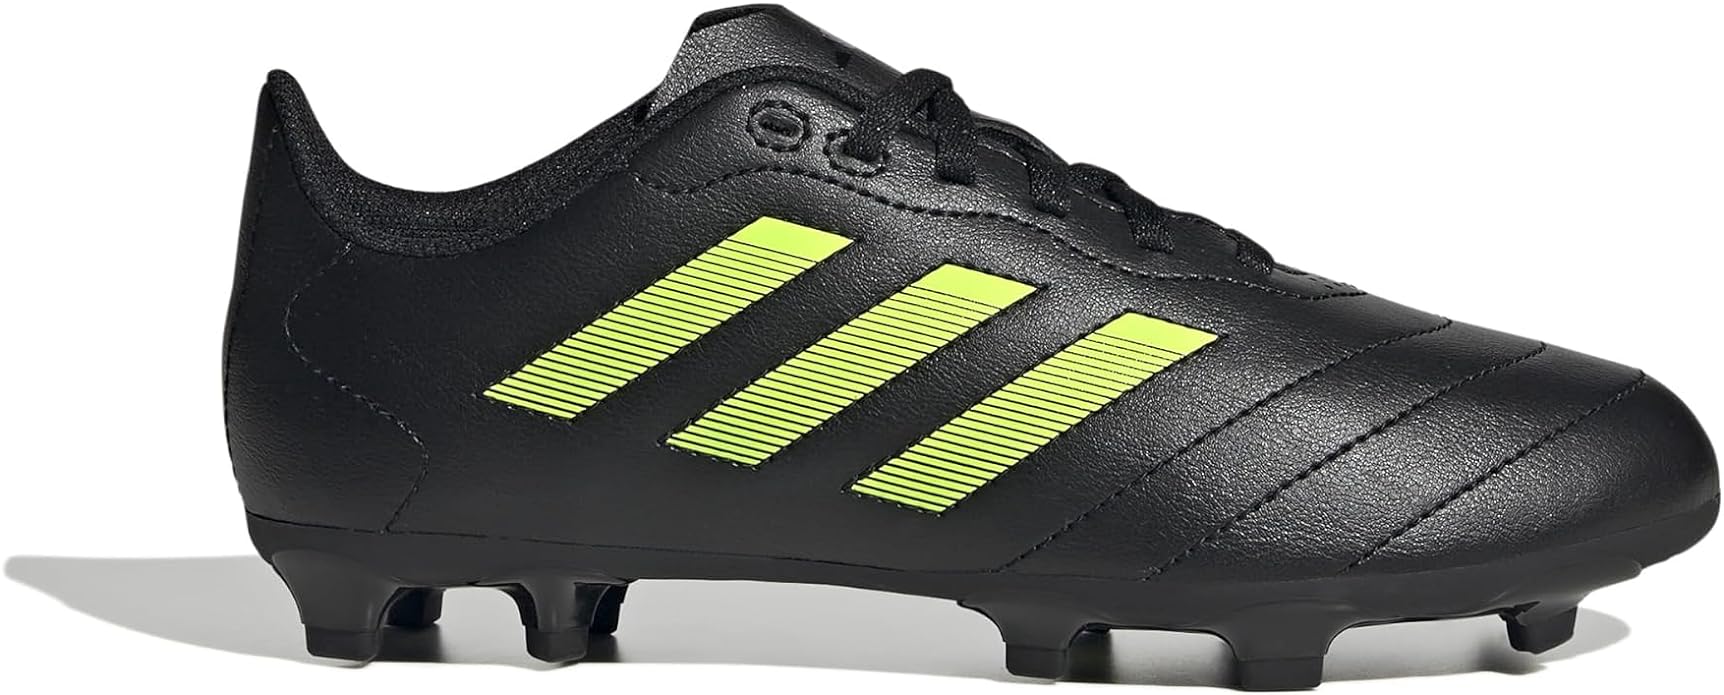 Adidas Unisex-Child Goletto VIII Firm Ground Soccer Shoe